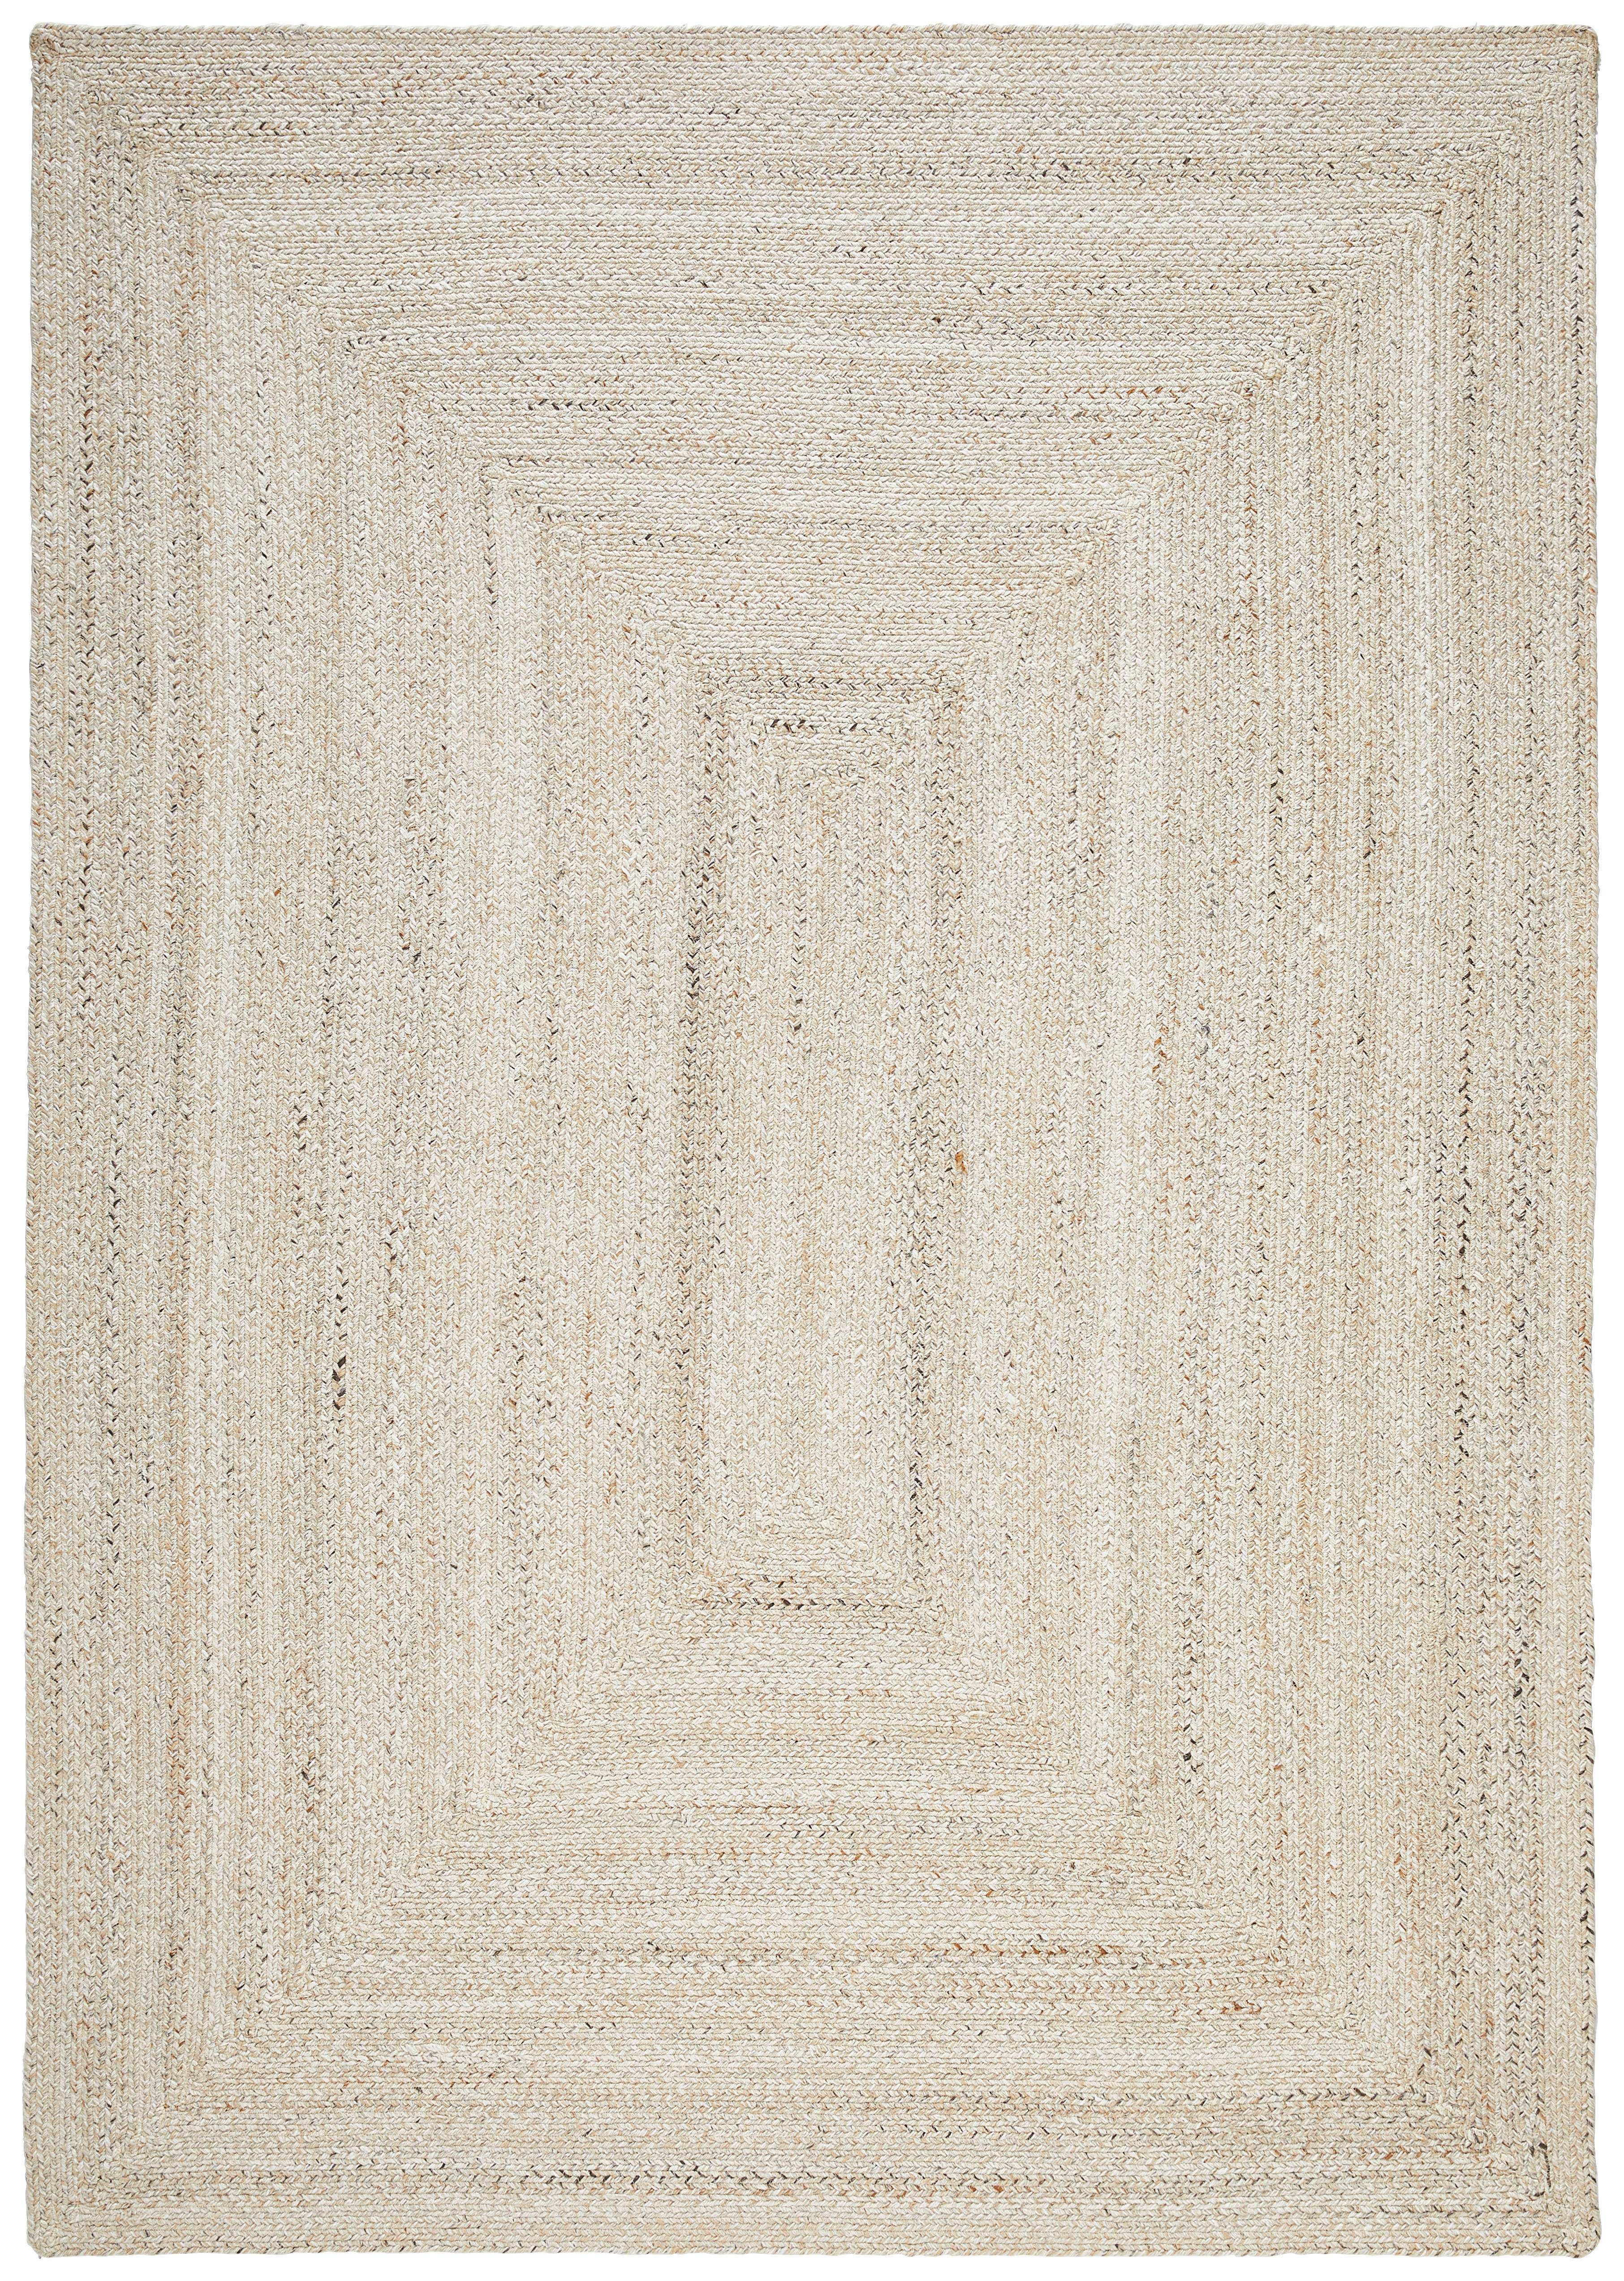 OUTDOORTEPPICH 120/180 cm  - Beige, KONVENTIONELL, Textil (120/180cm) - Ambia Garden